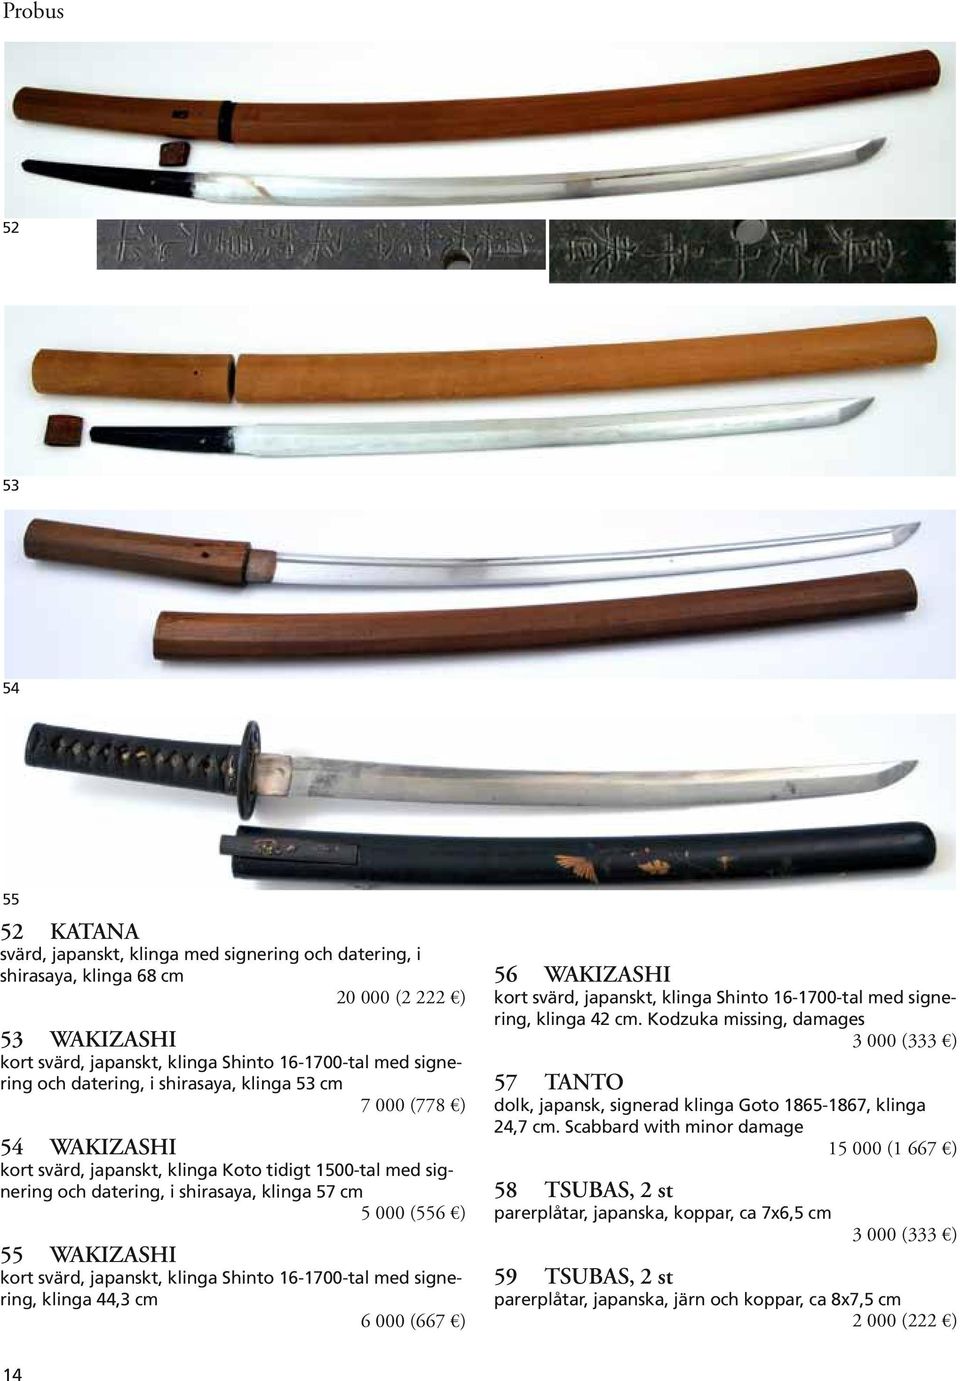 svärd, japanskt, klinga Shinto 16-1700-tal med signering, klinga 44,3 cm 6 000 (667 ) 56 WAKIZASHI kort svärd, japanskt, klinga Shinto 16-1700-tal med signering, klinga 42 cm.